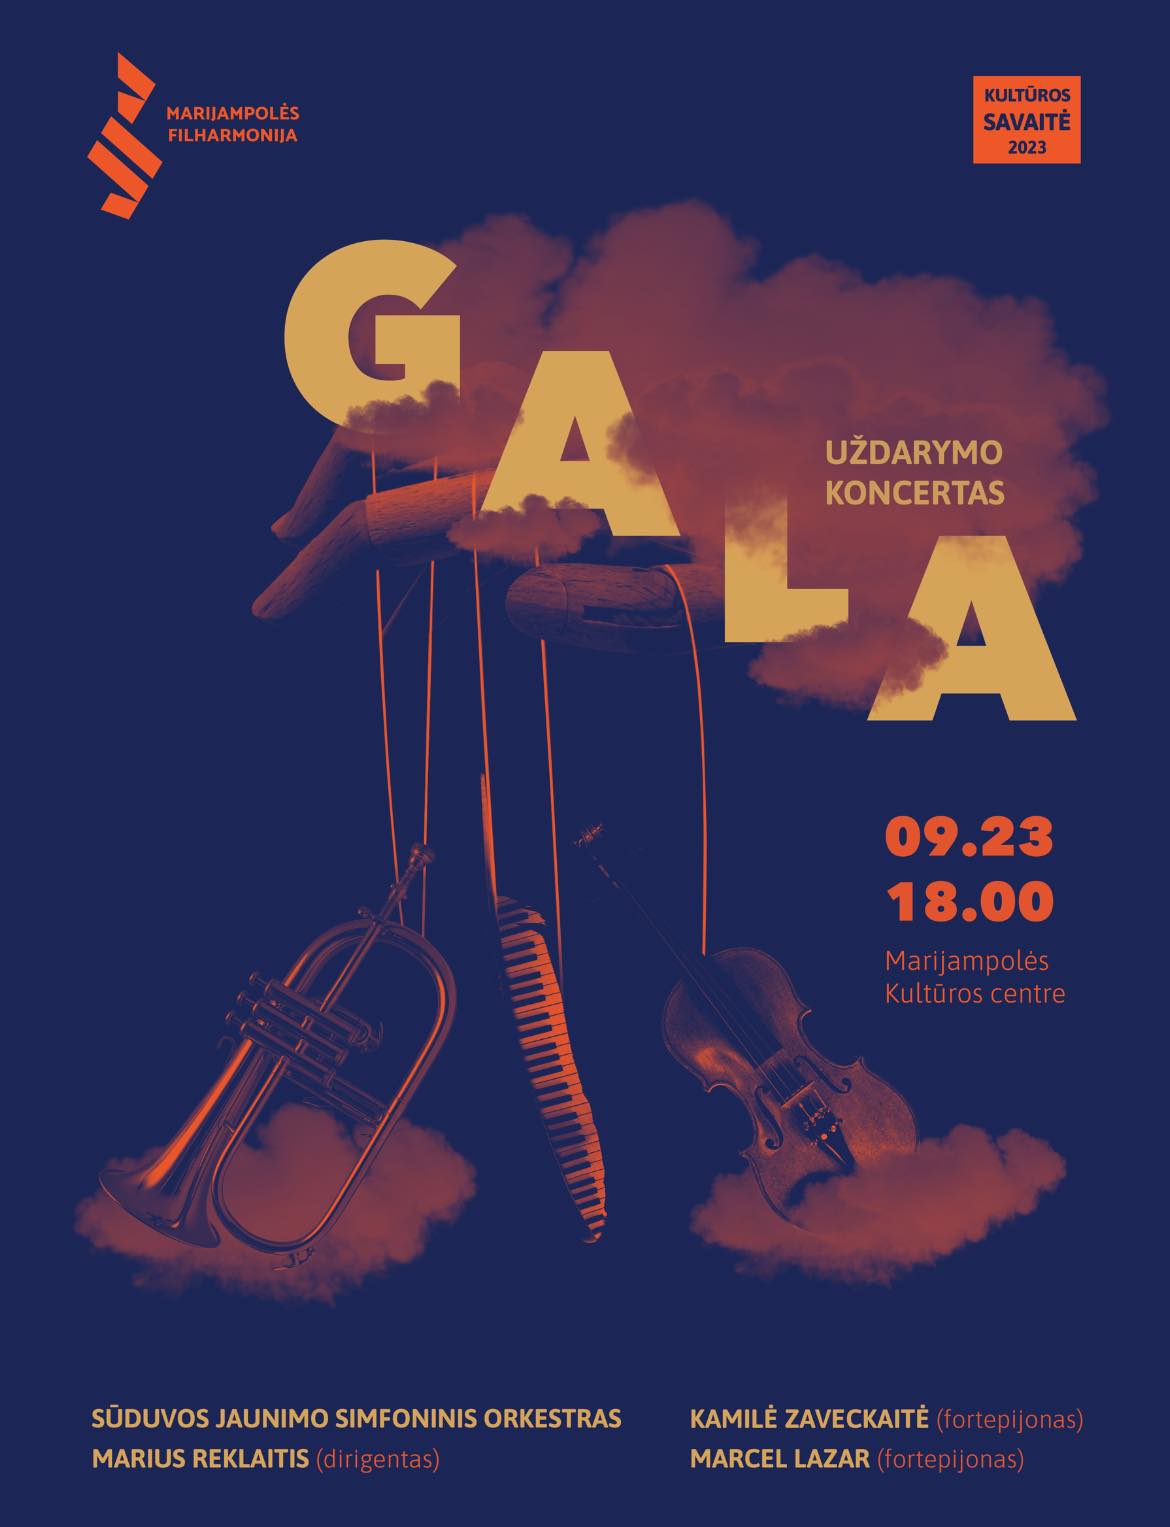 „Kultūros savaitė 2023“ - GALA uždarymo koncertas